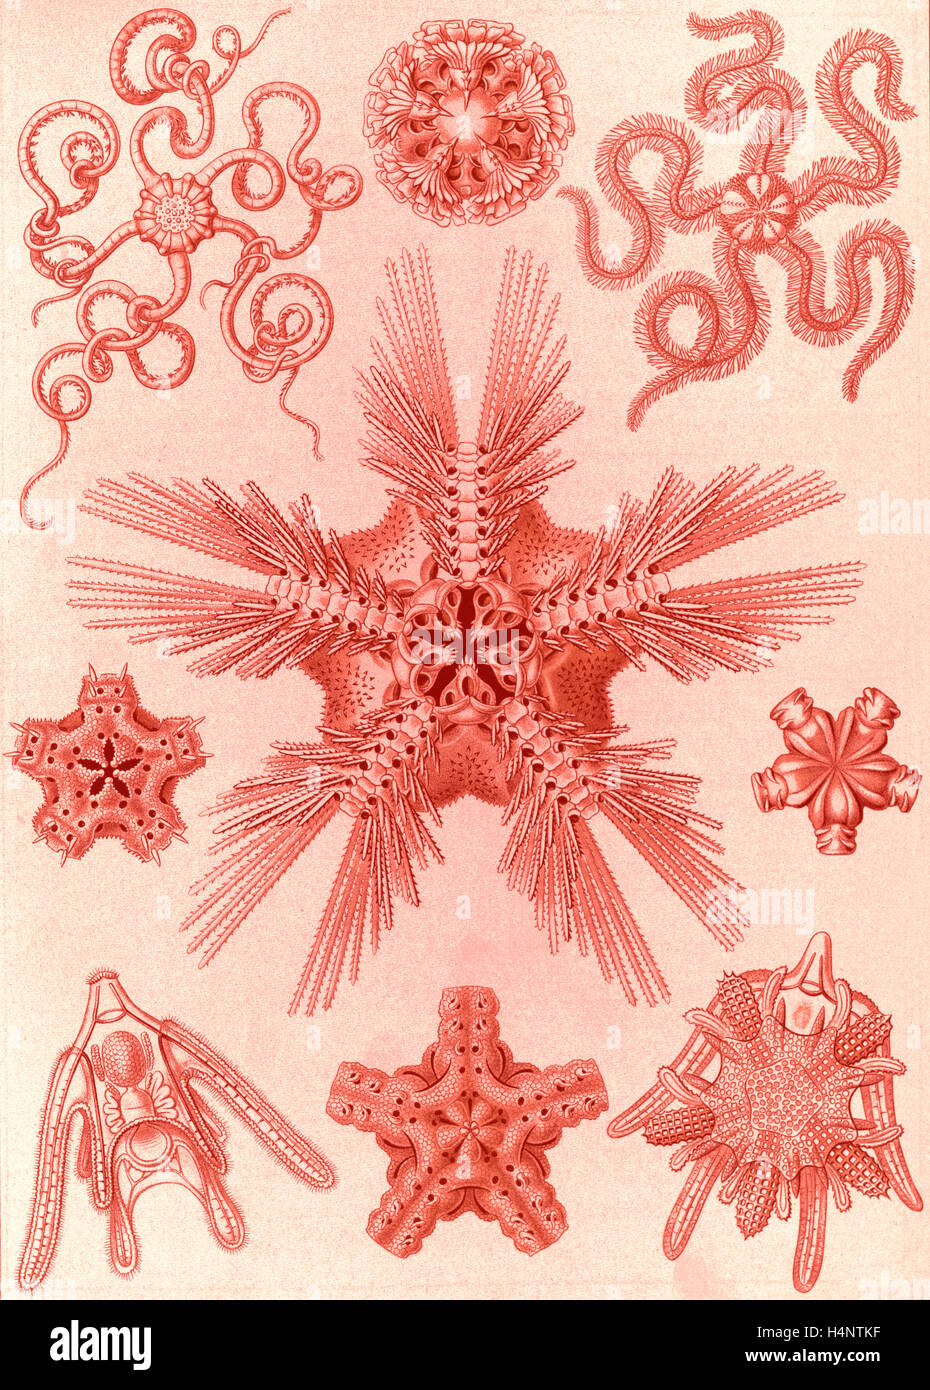 La ilustración muestra los invertebrados marinos relacionados con starfish. Ophiodea. - Schlangensterne, 1 Imprimir : litografía de color Foto de stock